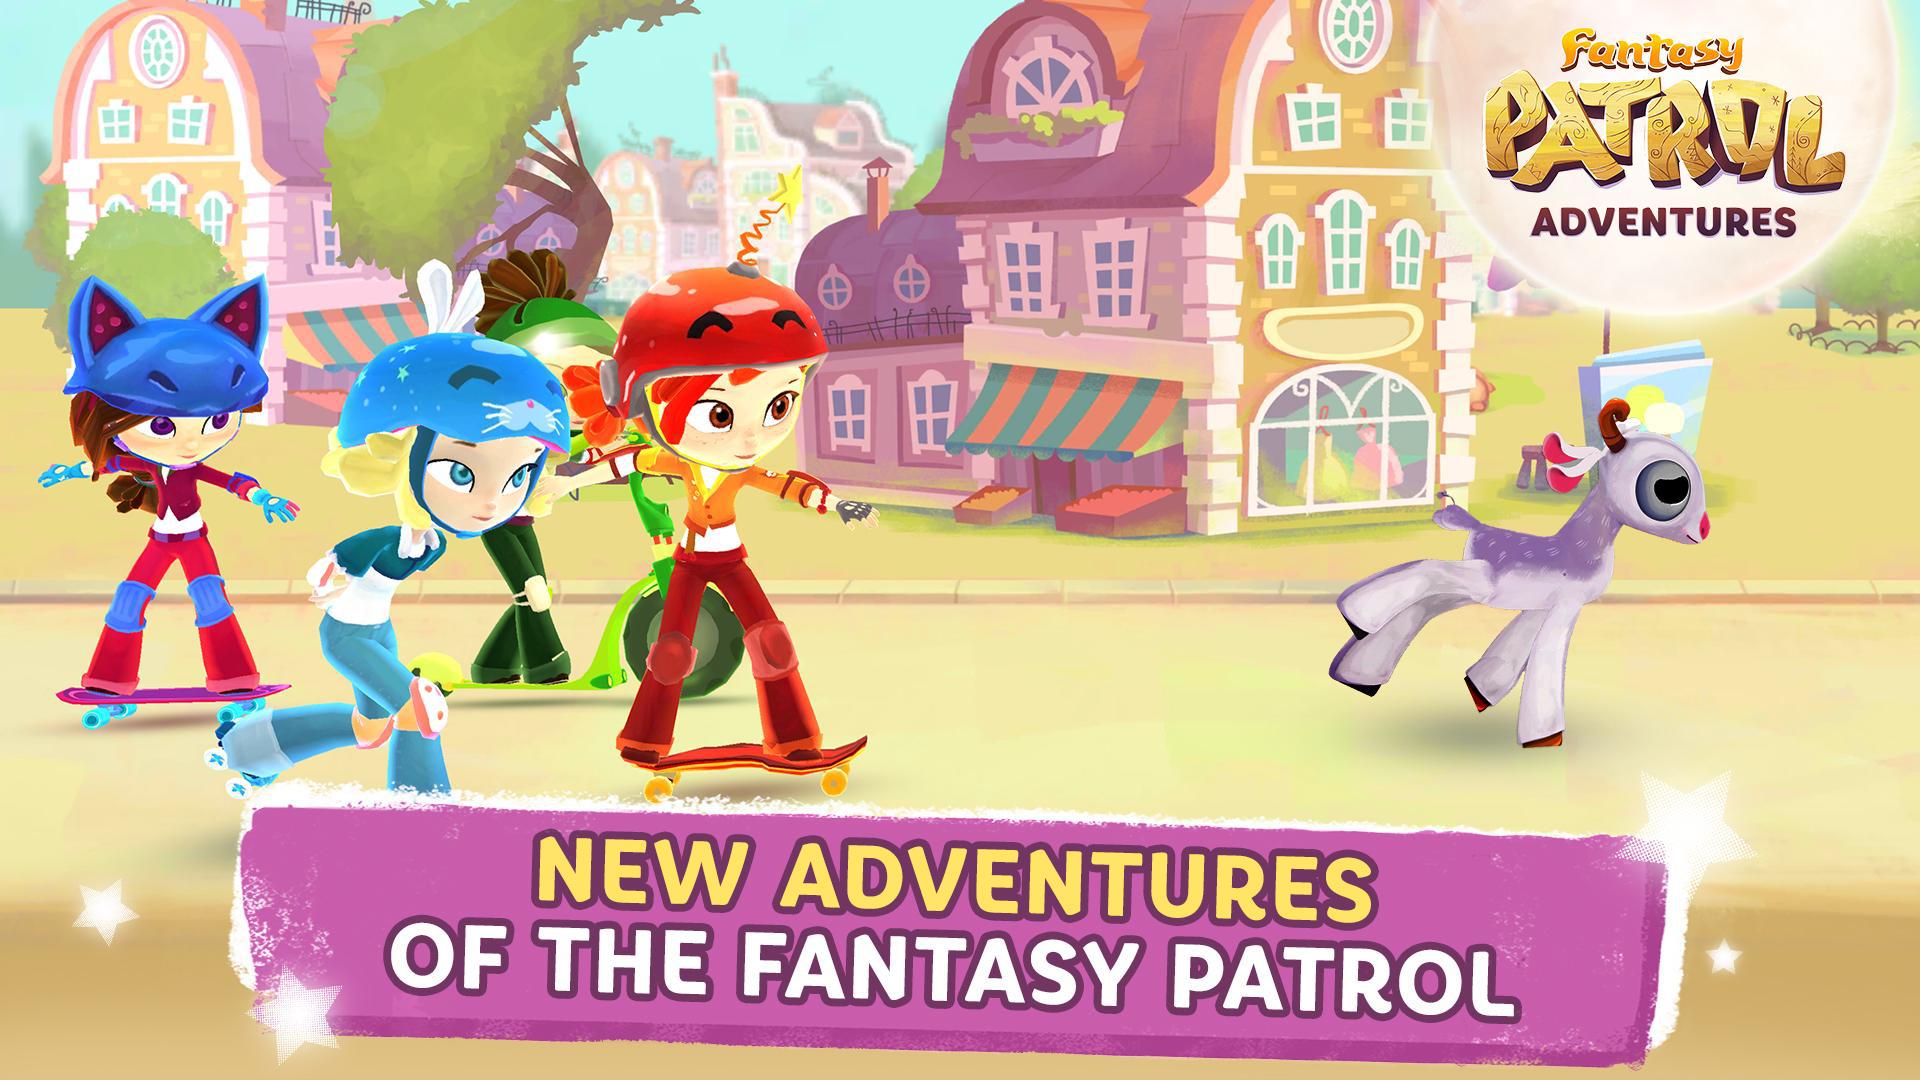 Fantasy patrol: Adventures_游戏简介_图2